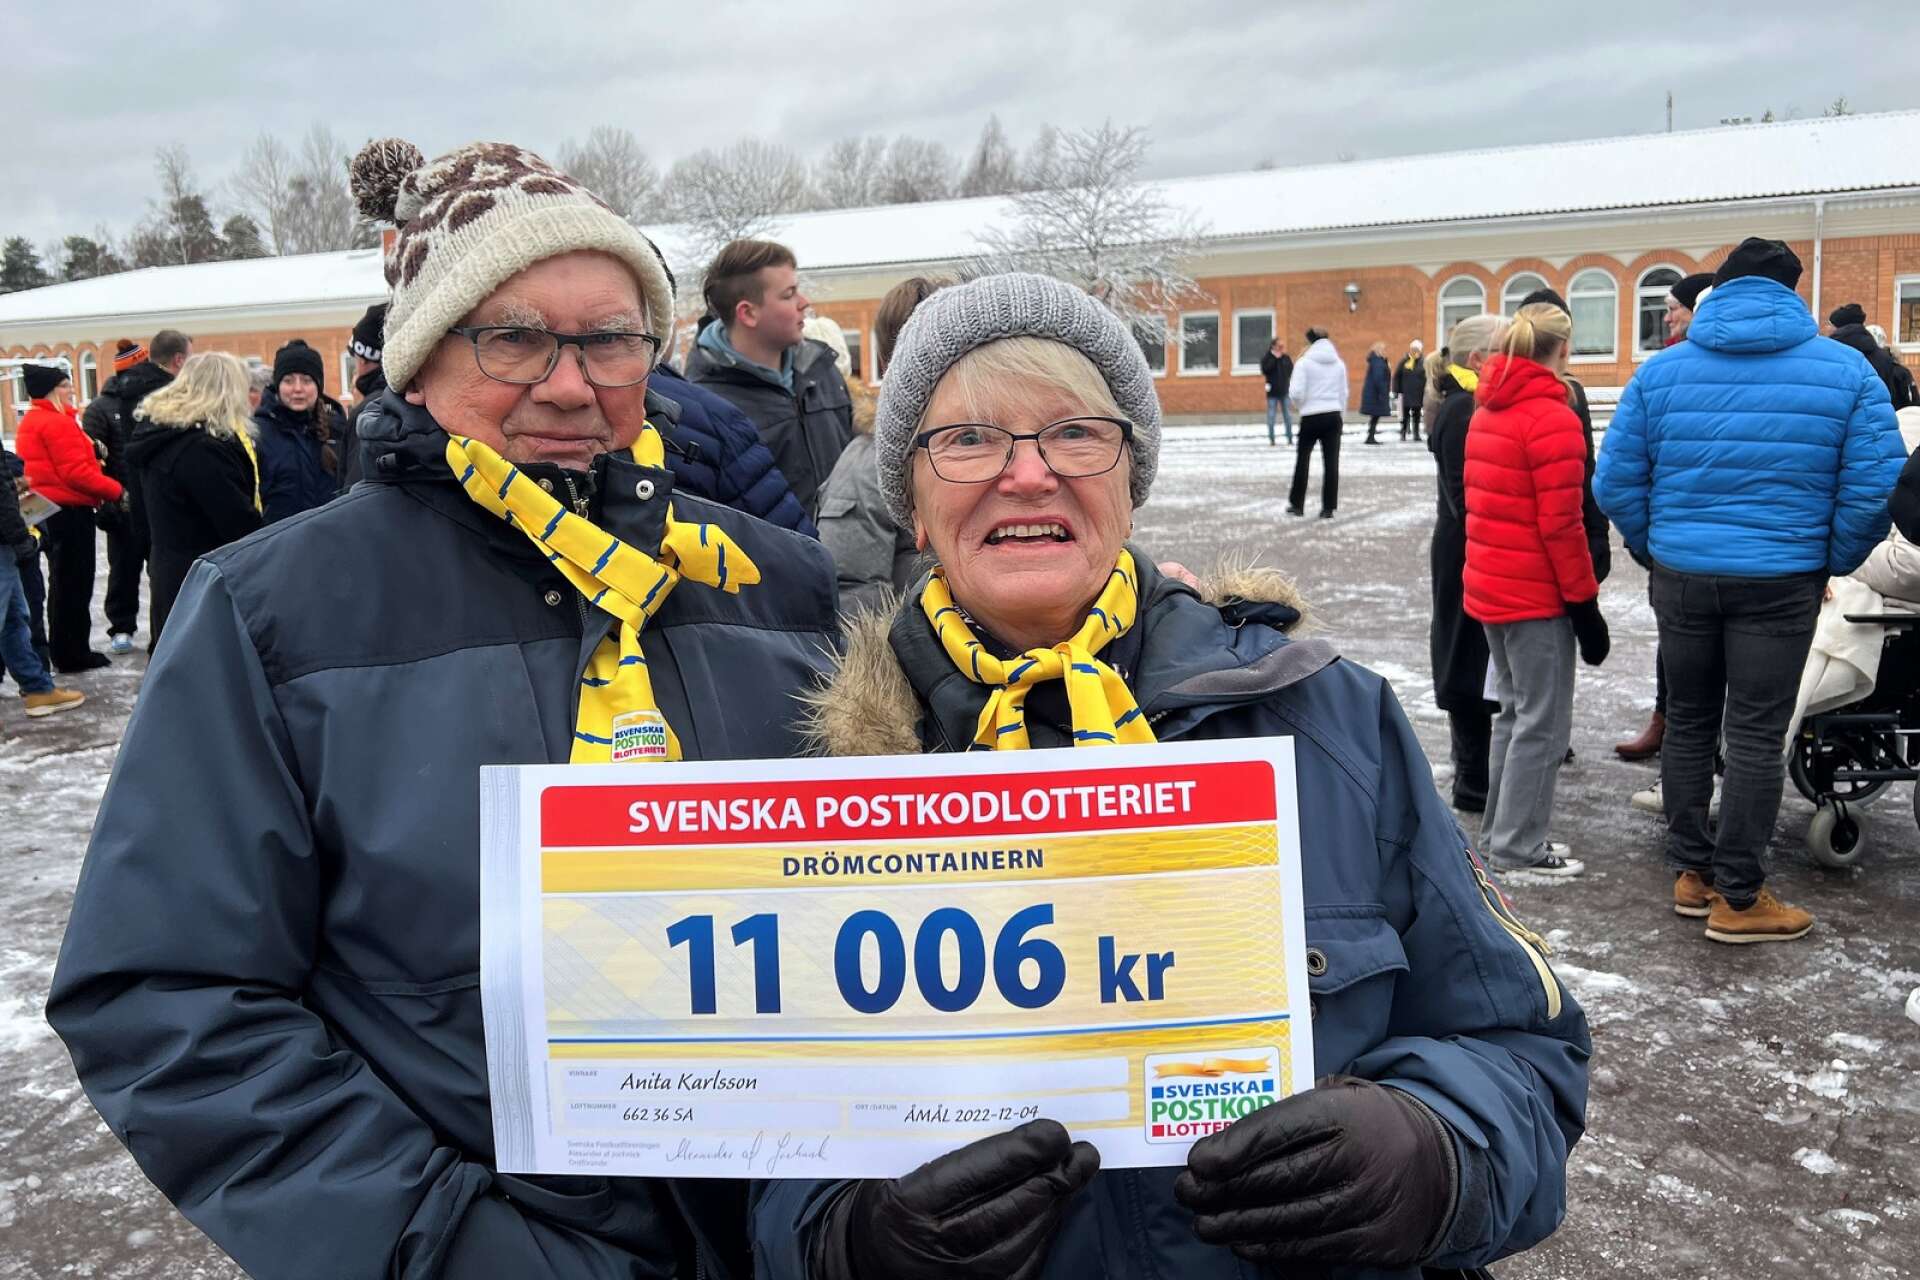 John Karlsson och Anita Karlsson med vinstchecken. Anita tyckte det var trevligt med de gula halsdukarna och tänker behålla dem som minne.